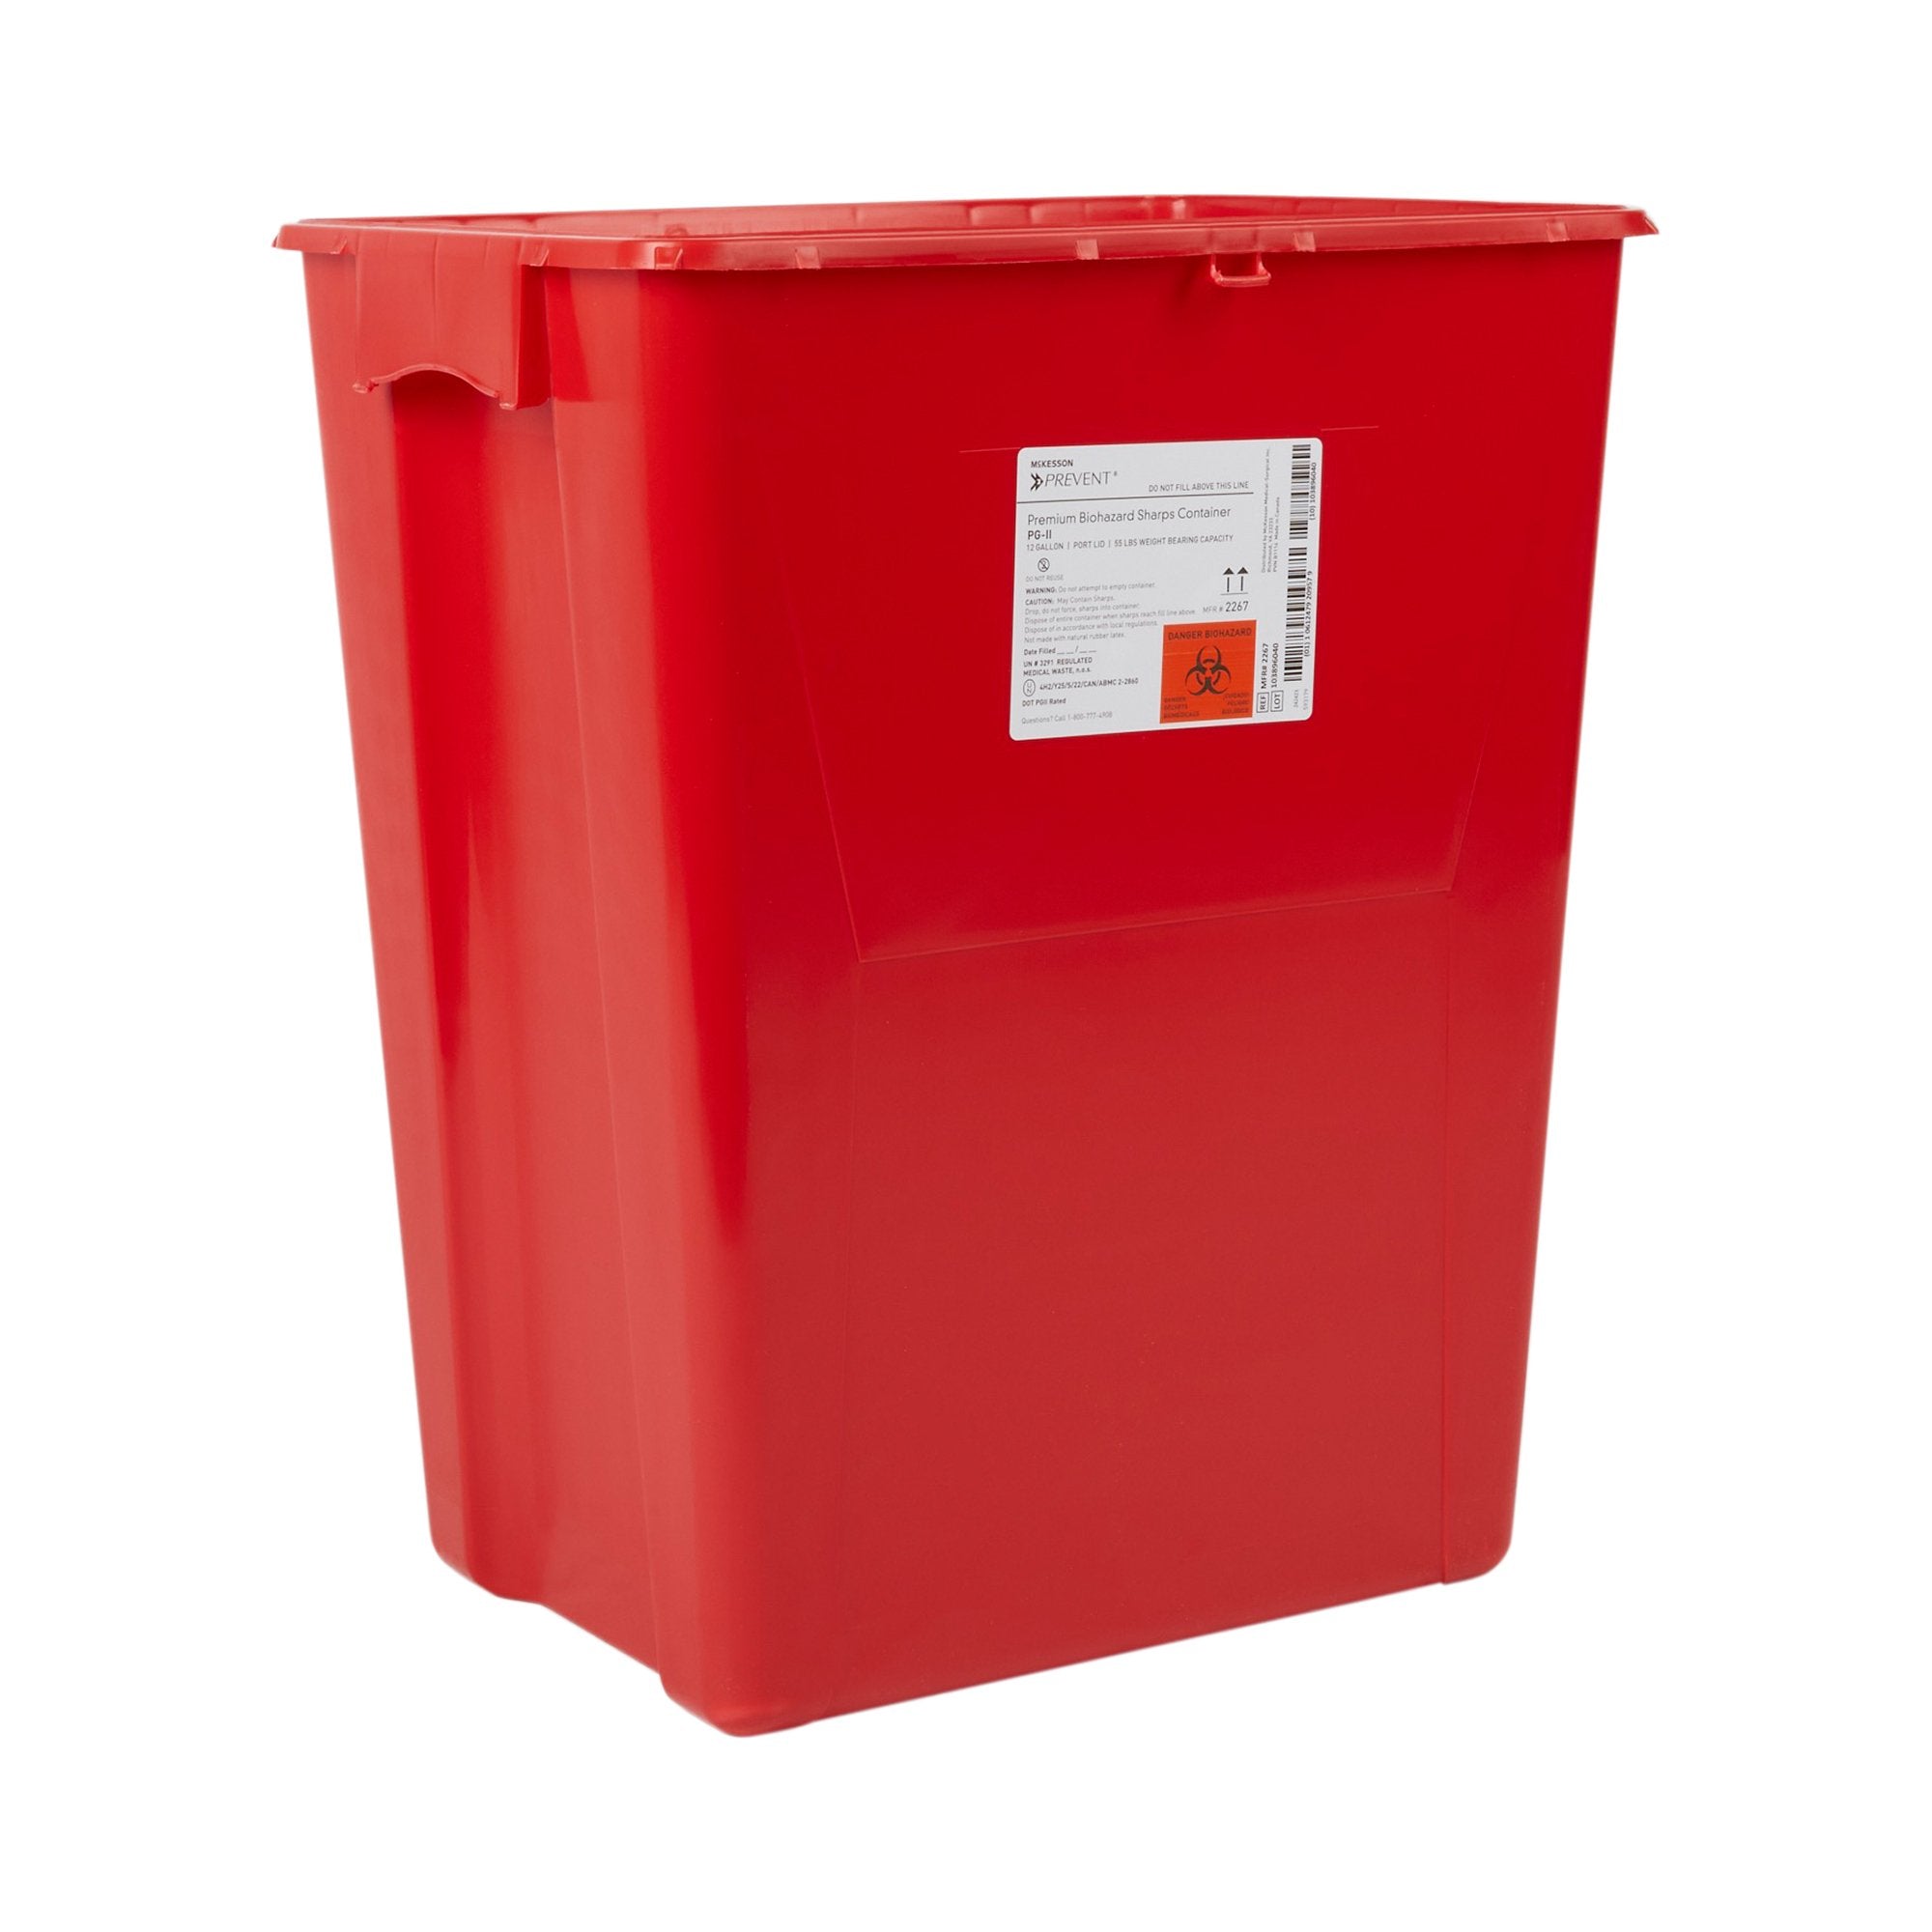 McKesson Prevent® Sharps Container, 12 Gallon, 20-4/5 x 17-3/10 x 13 Inch (8 Units)